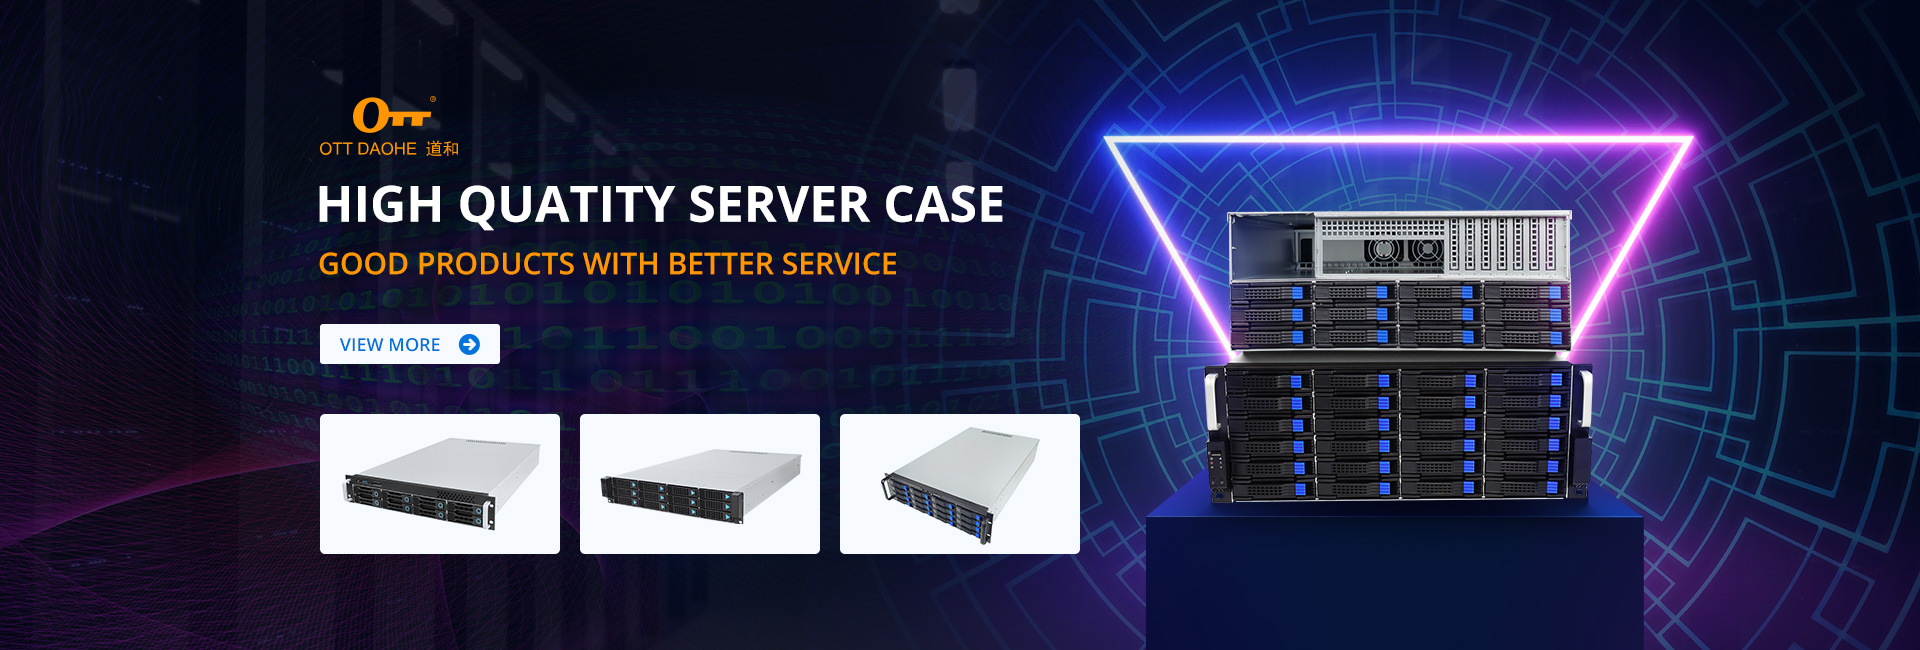 High quality server case